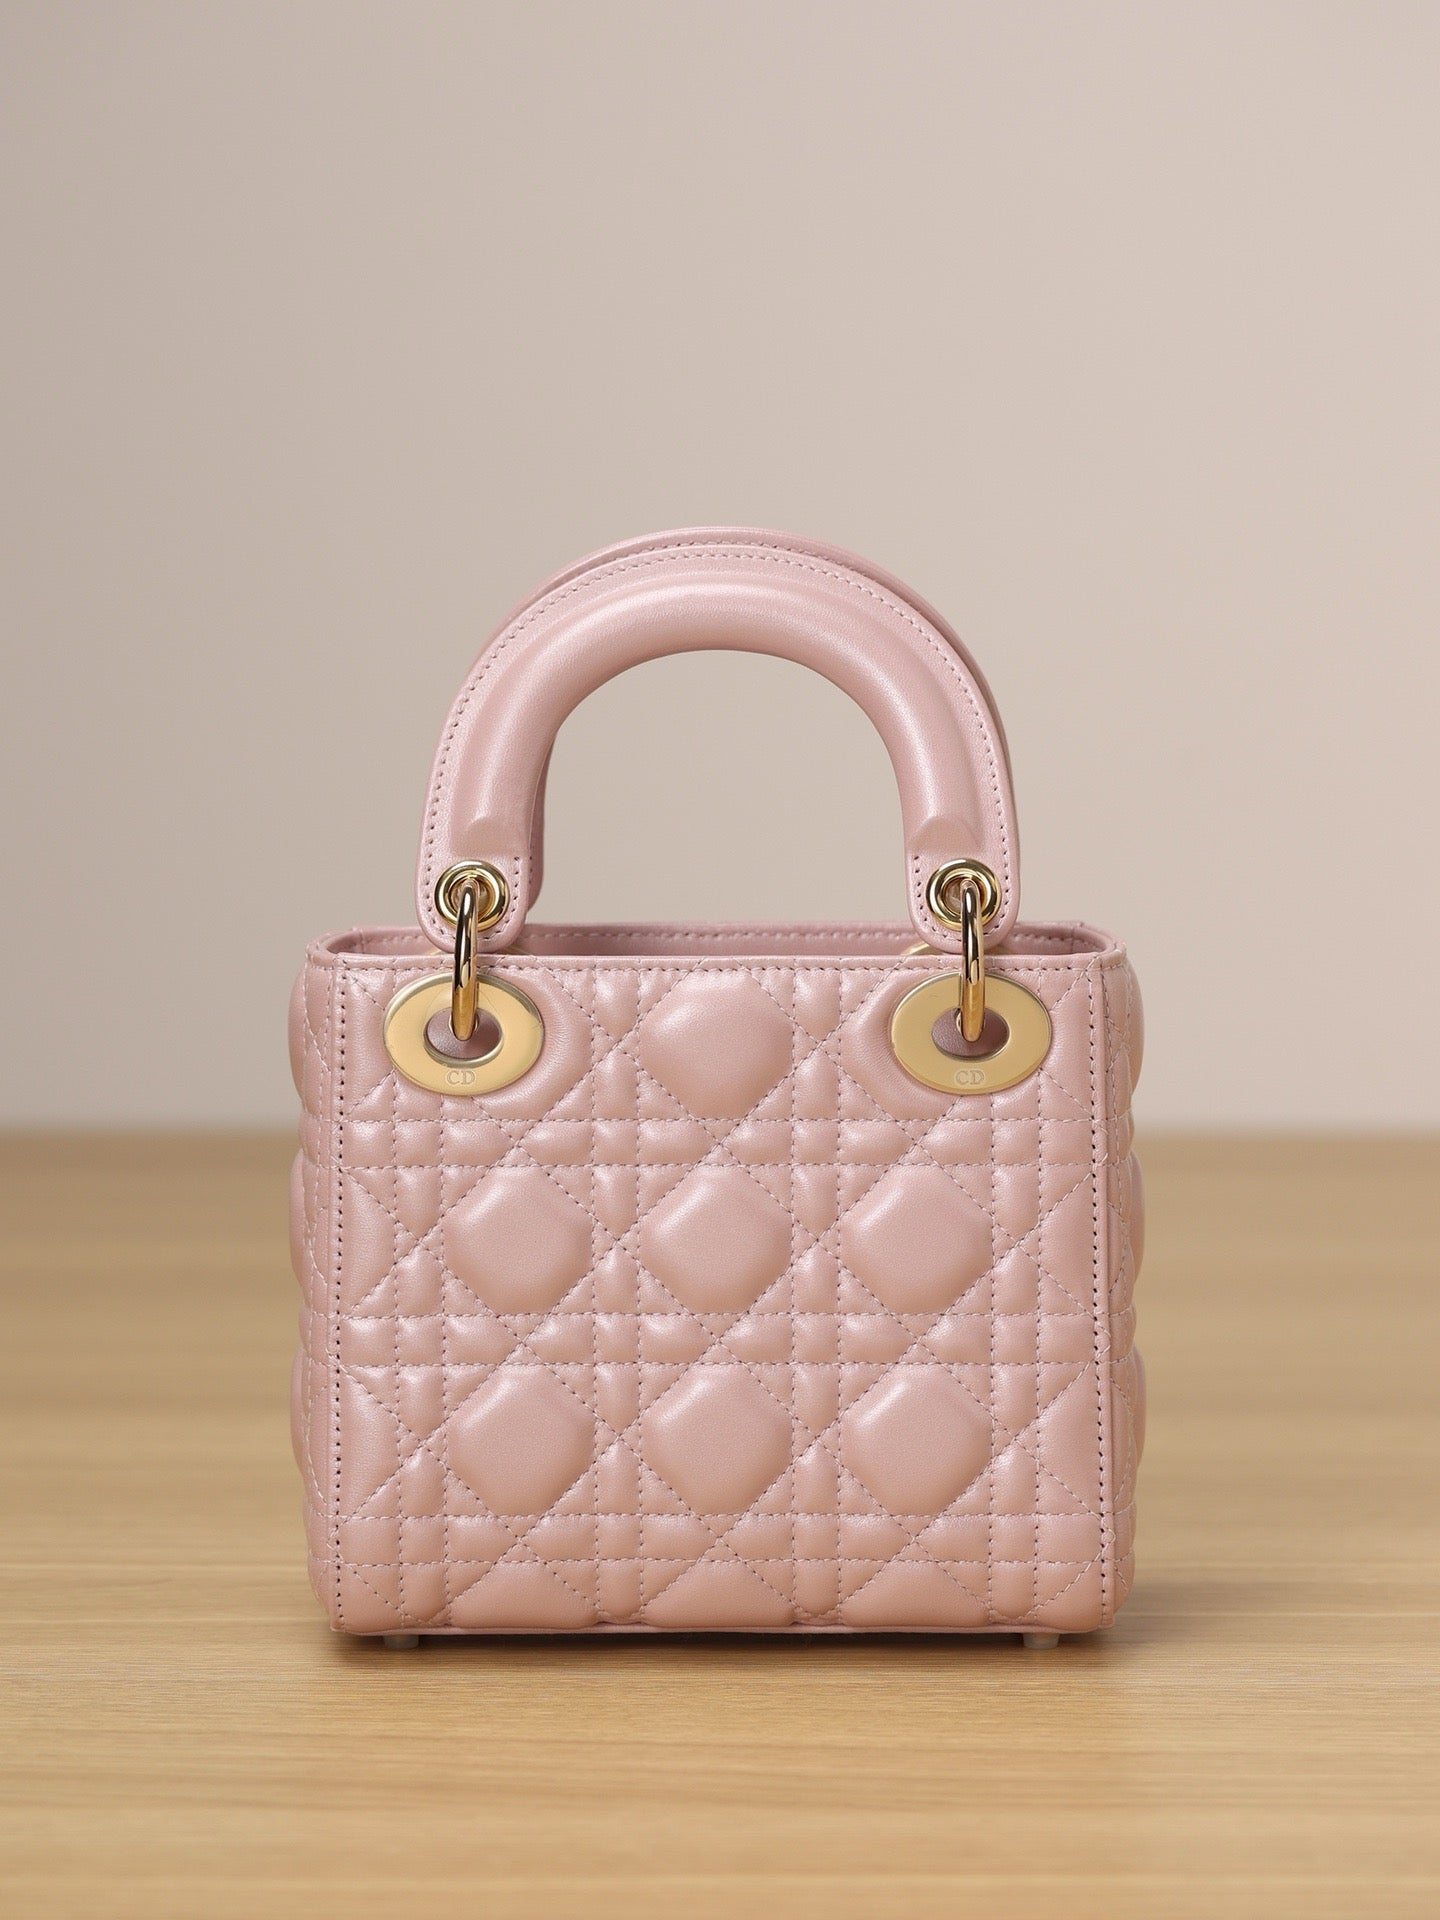 Mini Lady Dior Bag Pink Pearlescent Lamb Skin